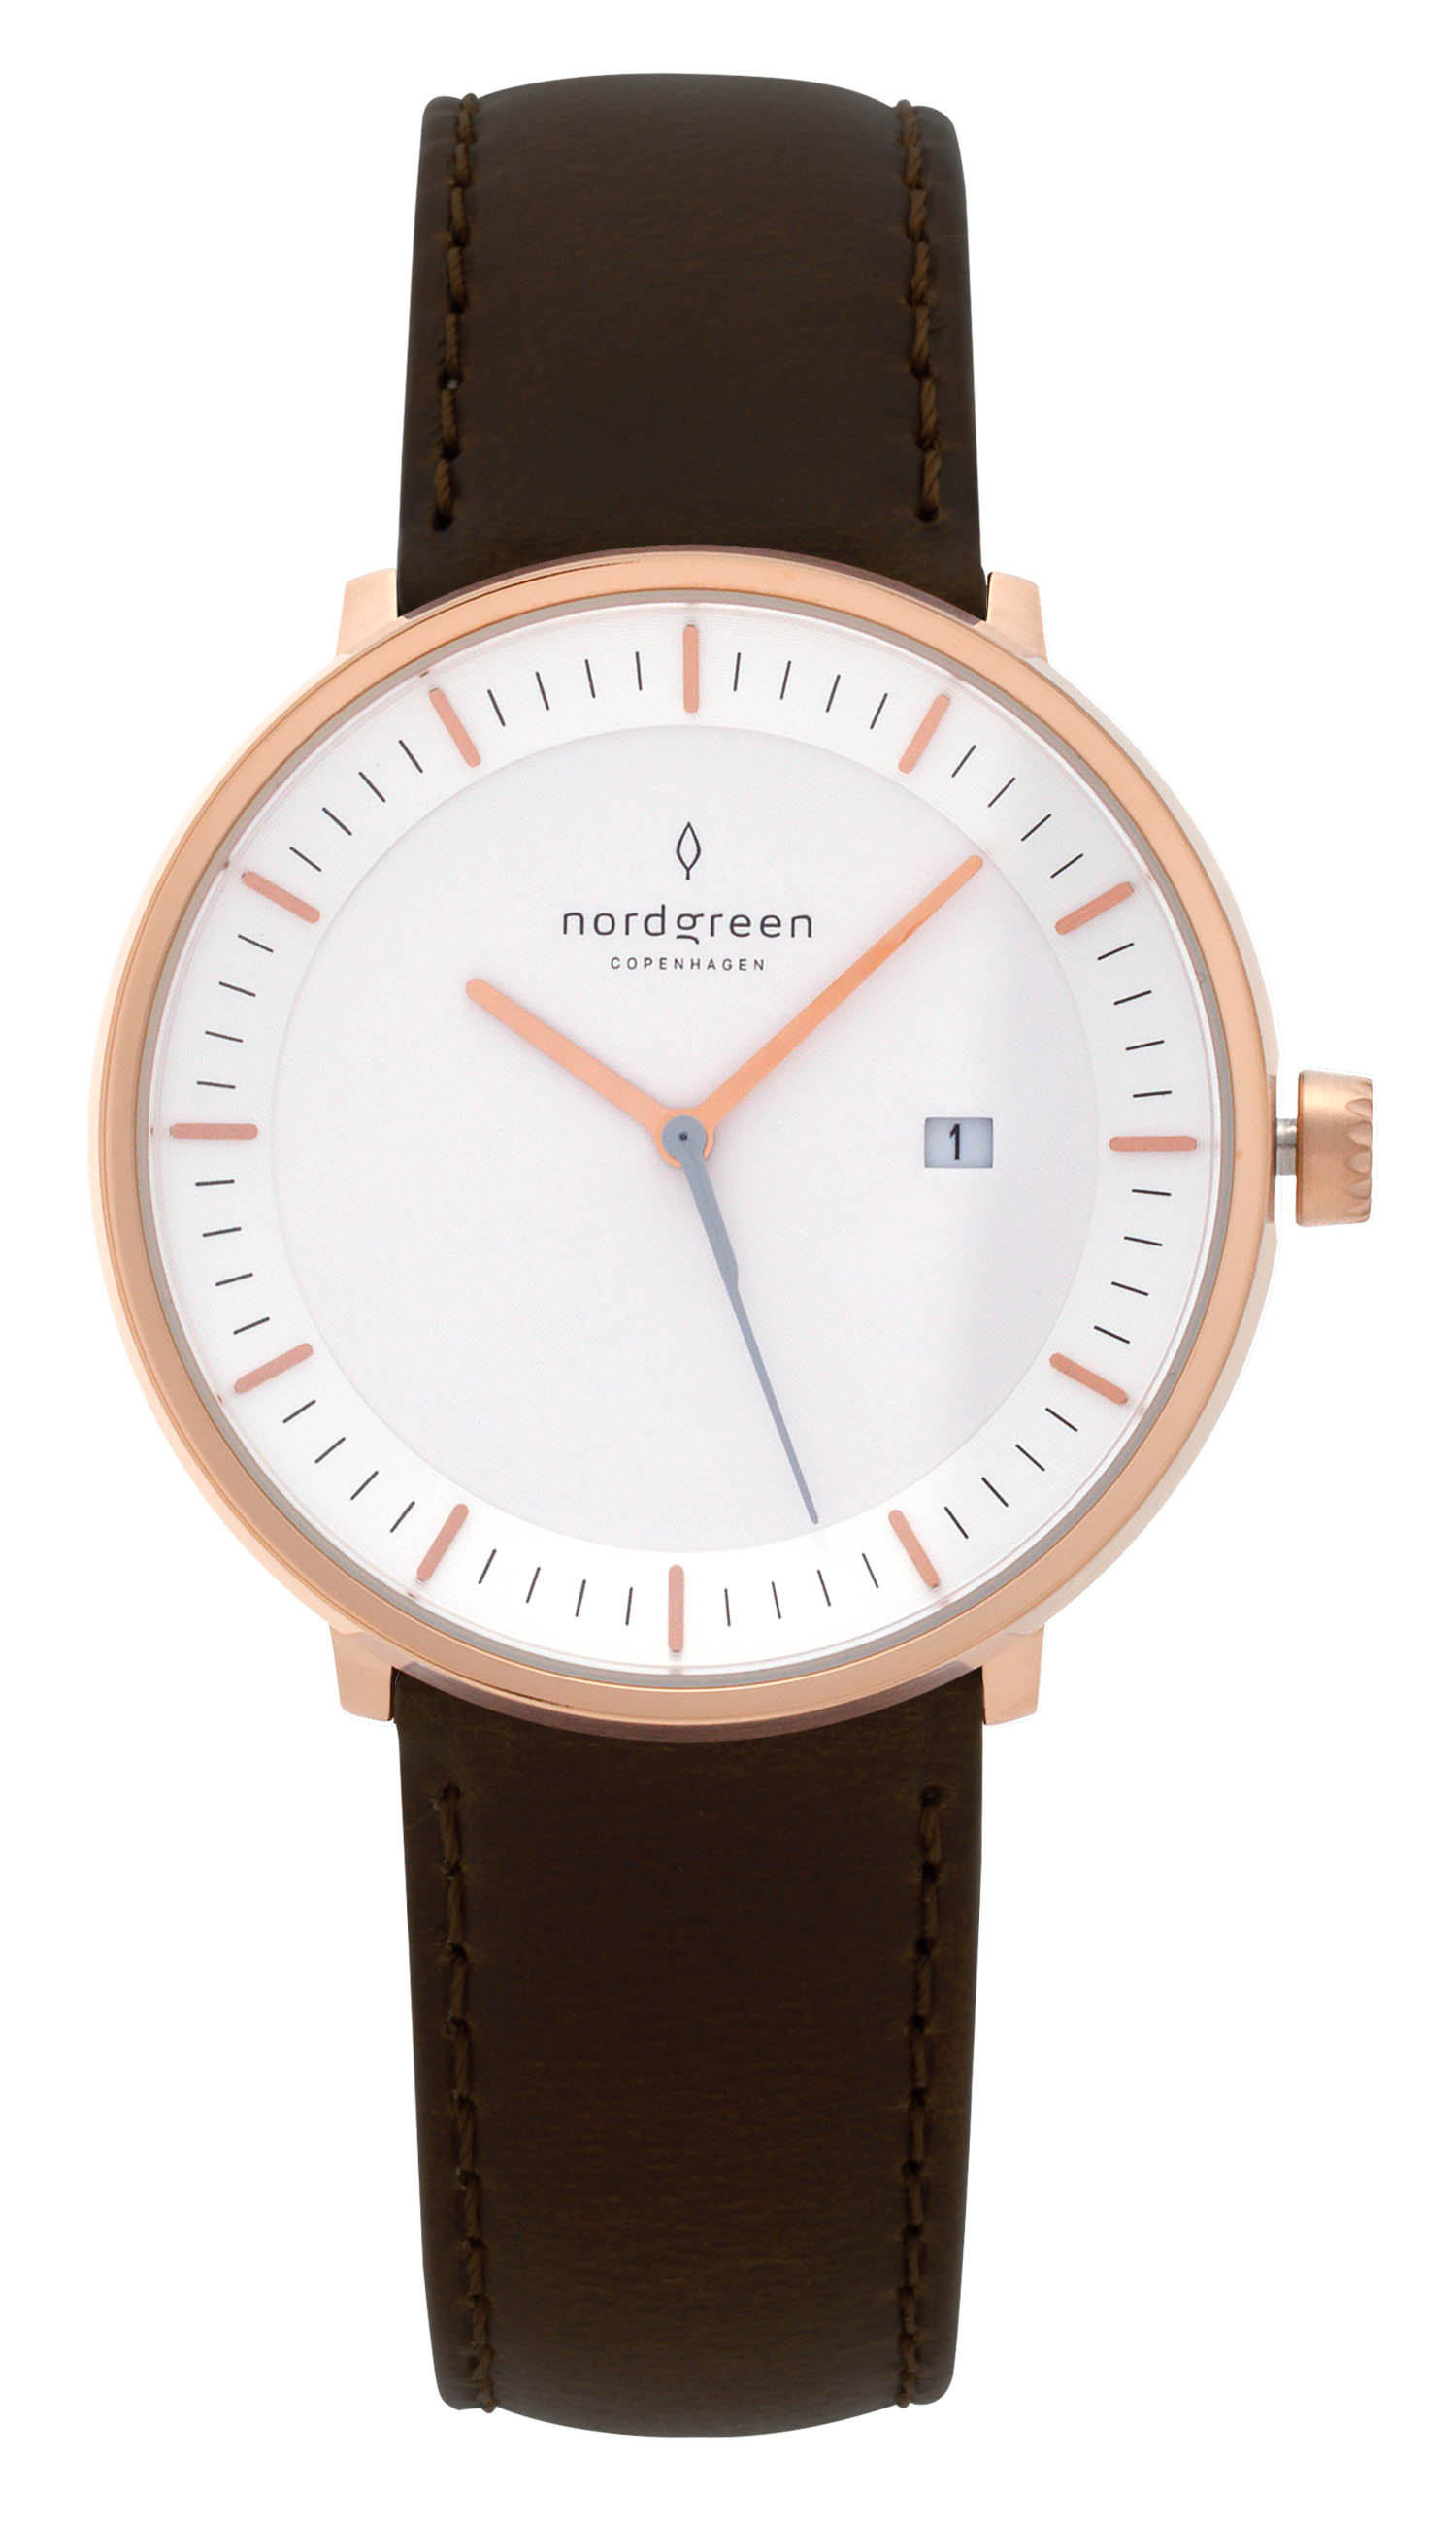 ノードグリーン nordgreen メンズ レディース 腕時計 フィロソファ Philosopher 40mm ホワイト フェイス レザーベルト 北欧  デザイン ブランド